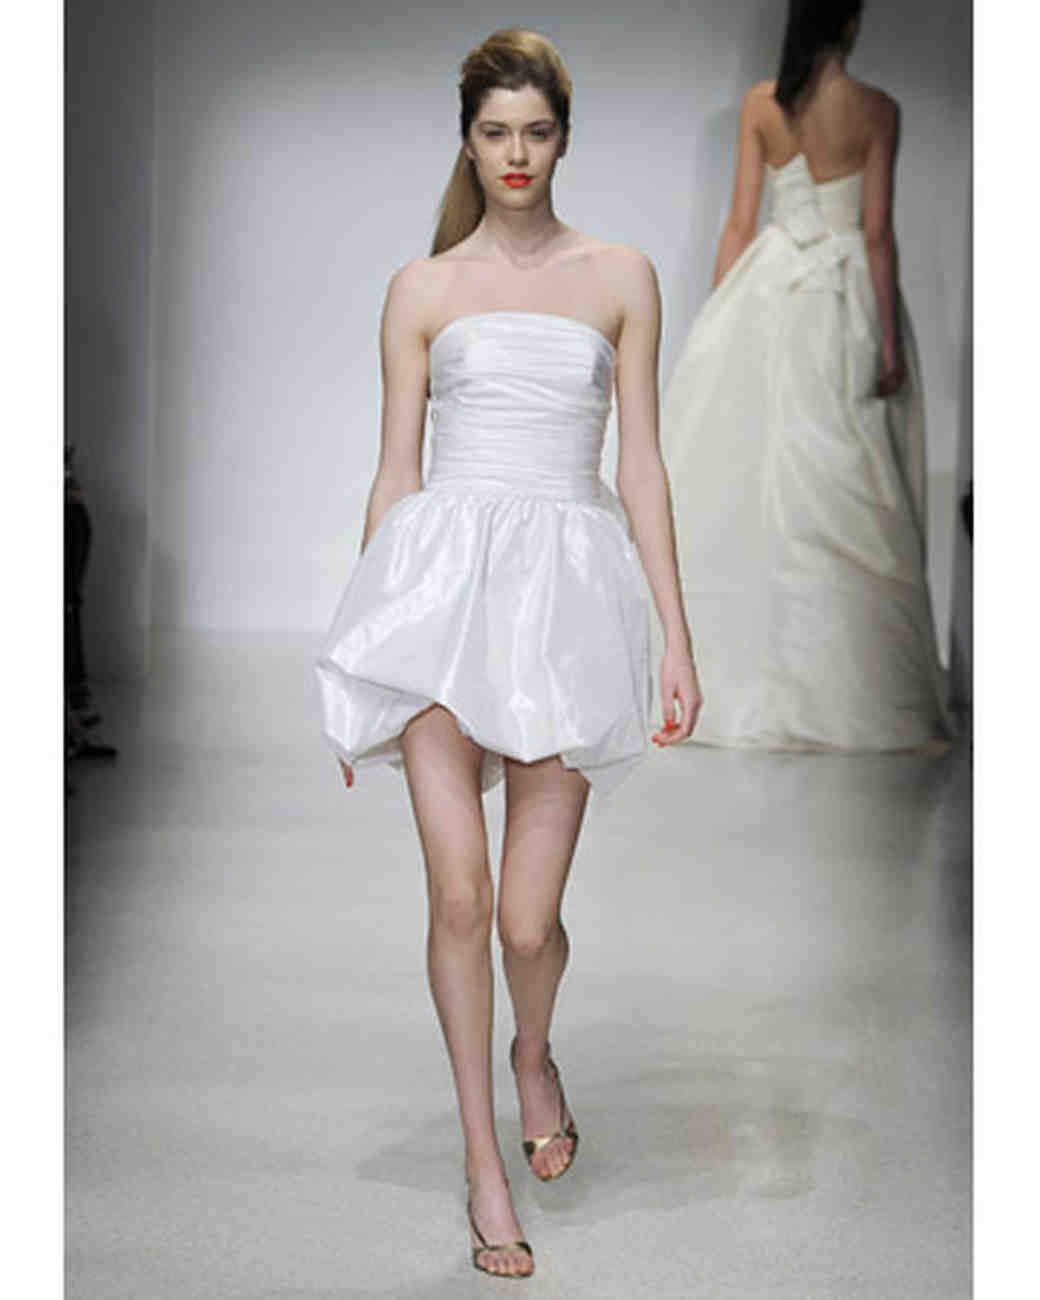 Short Wedding Dresses from Spring 2012 Bridal Fashion Week | Martha ...